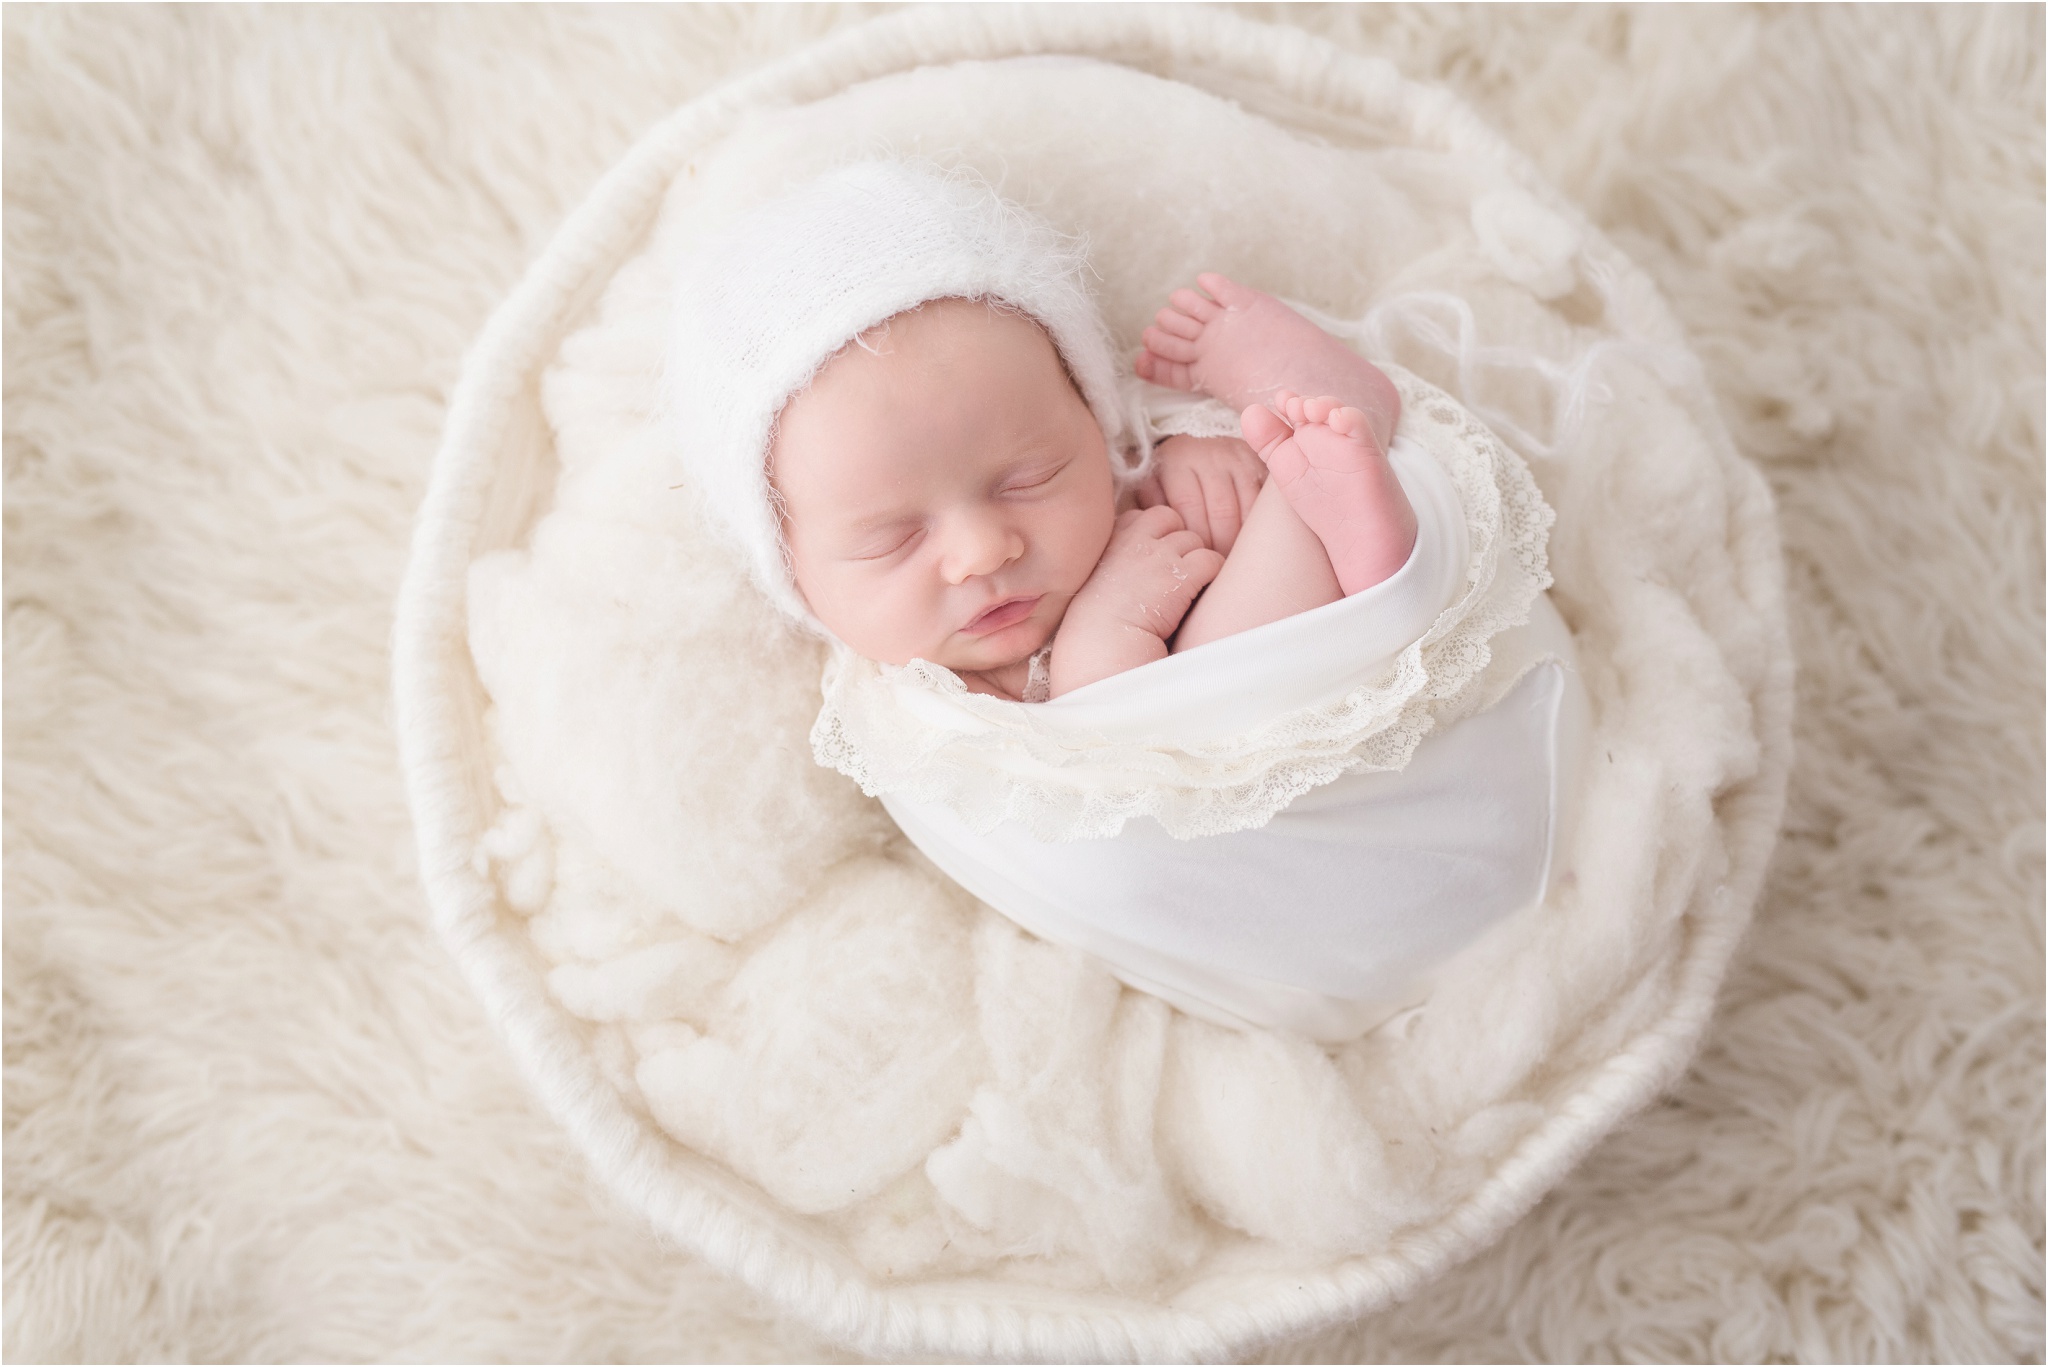 edmonto newborn photos, edmonton newborn photographer, nc photography, studio newborn photographer, st albert newborn photographer